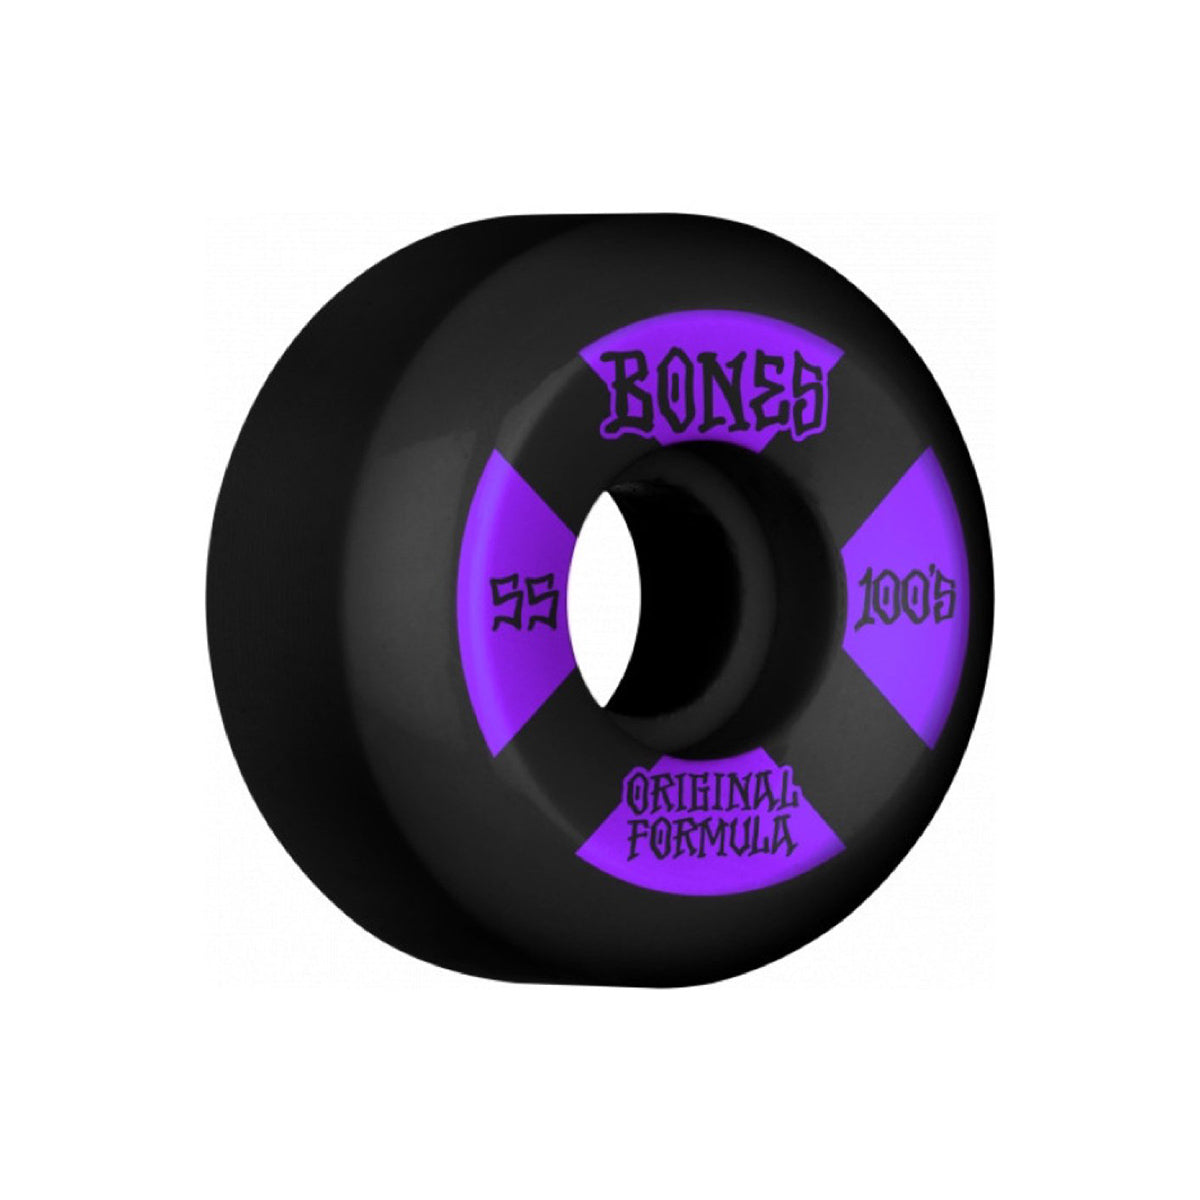 100's Skateboard Wheels - Black/Purple Recess